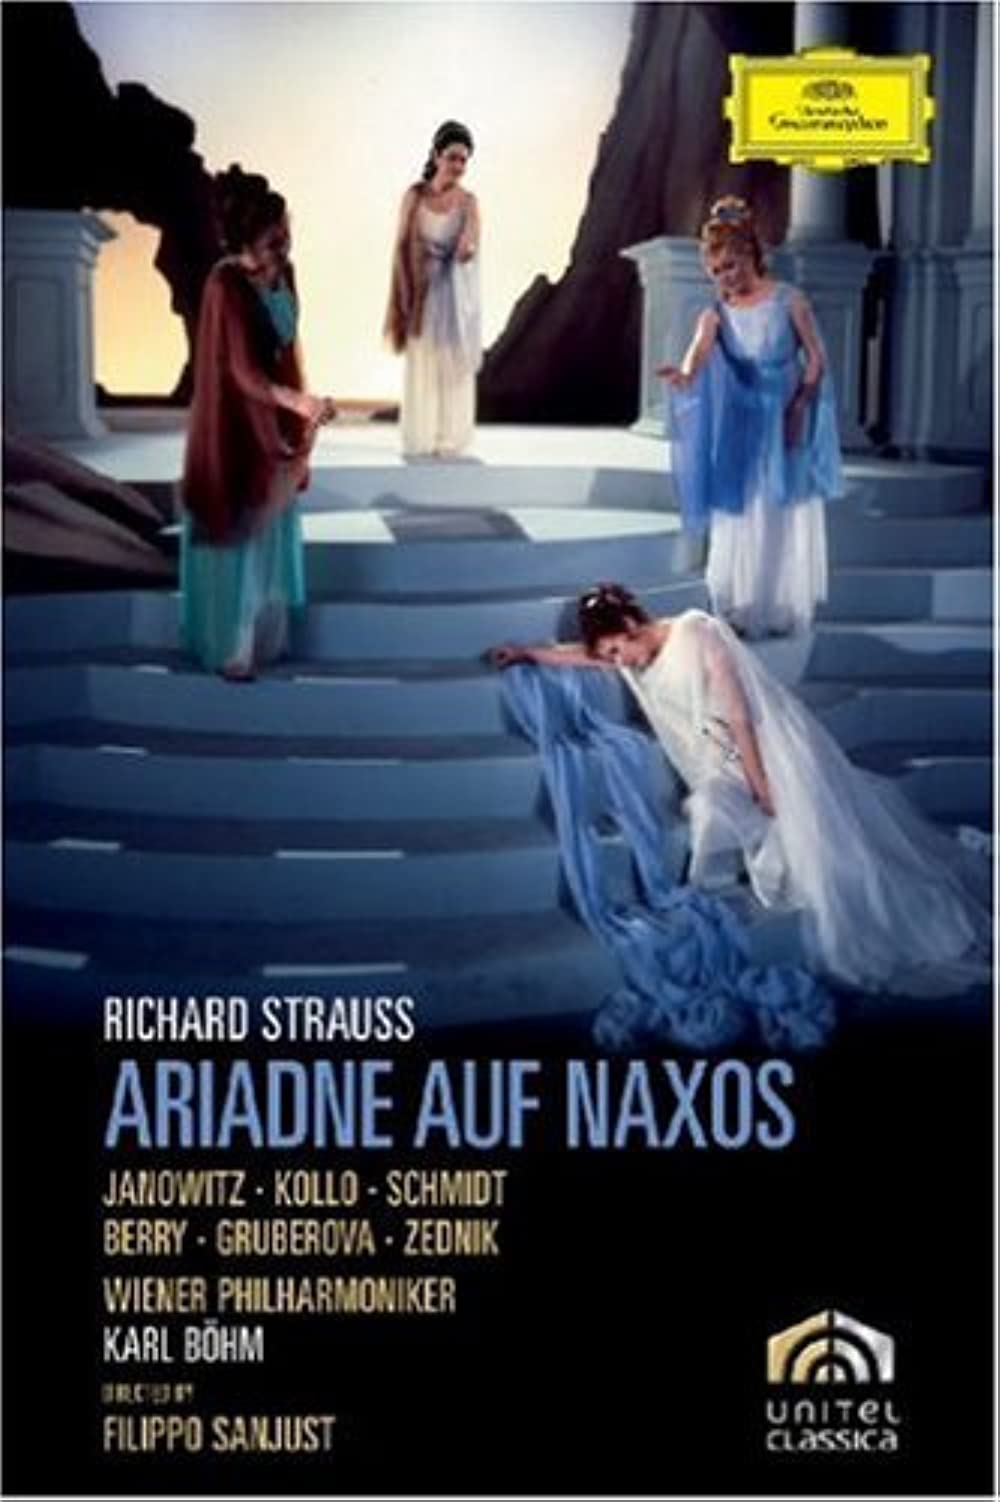 Filmbeschreibung zu Ariadne auf Naxos (1978)